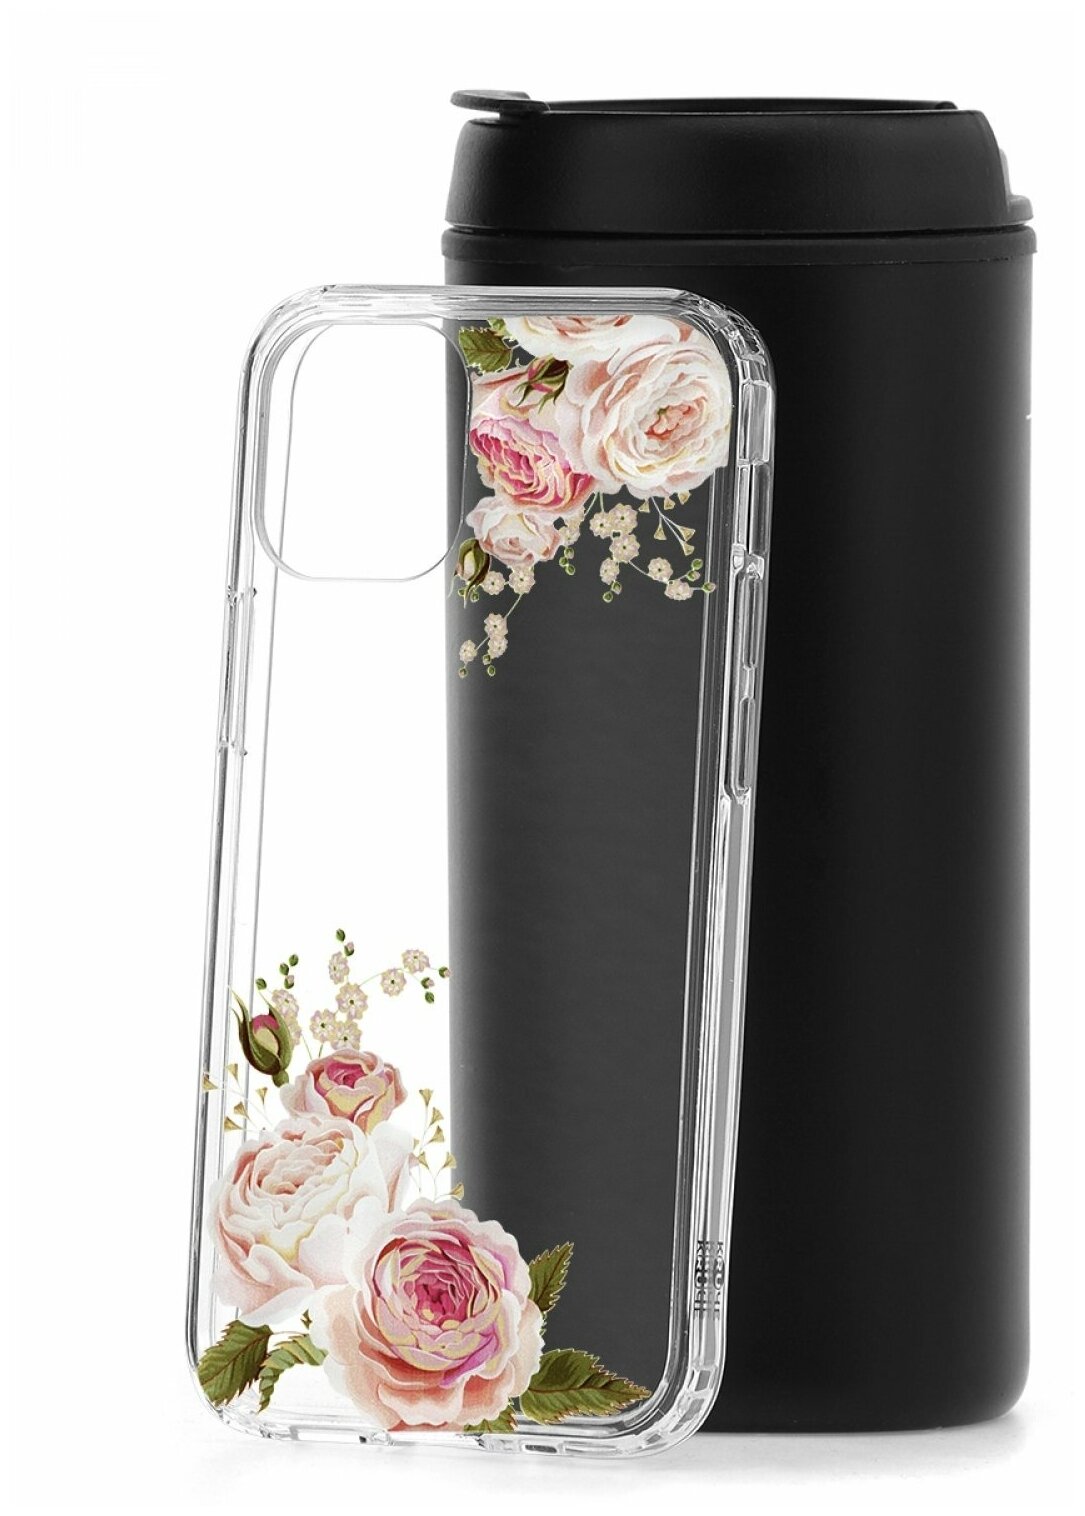 Противоударный чехол для Apple iPhone 12 mini КRUЧЕ Flowers Rose, силиконовый защитный бампер с рисунком, пластиковый кейс, накладка с защитой камеры